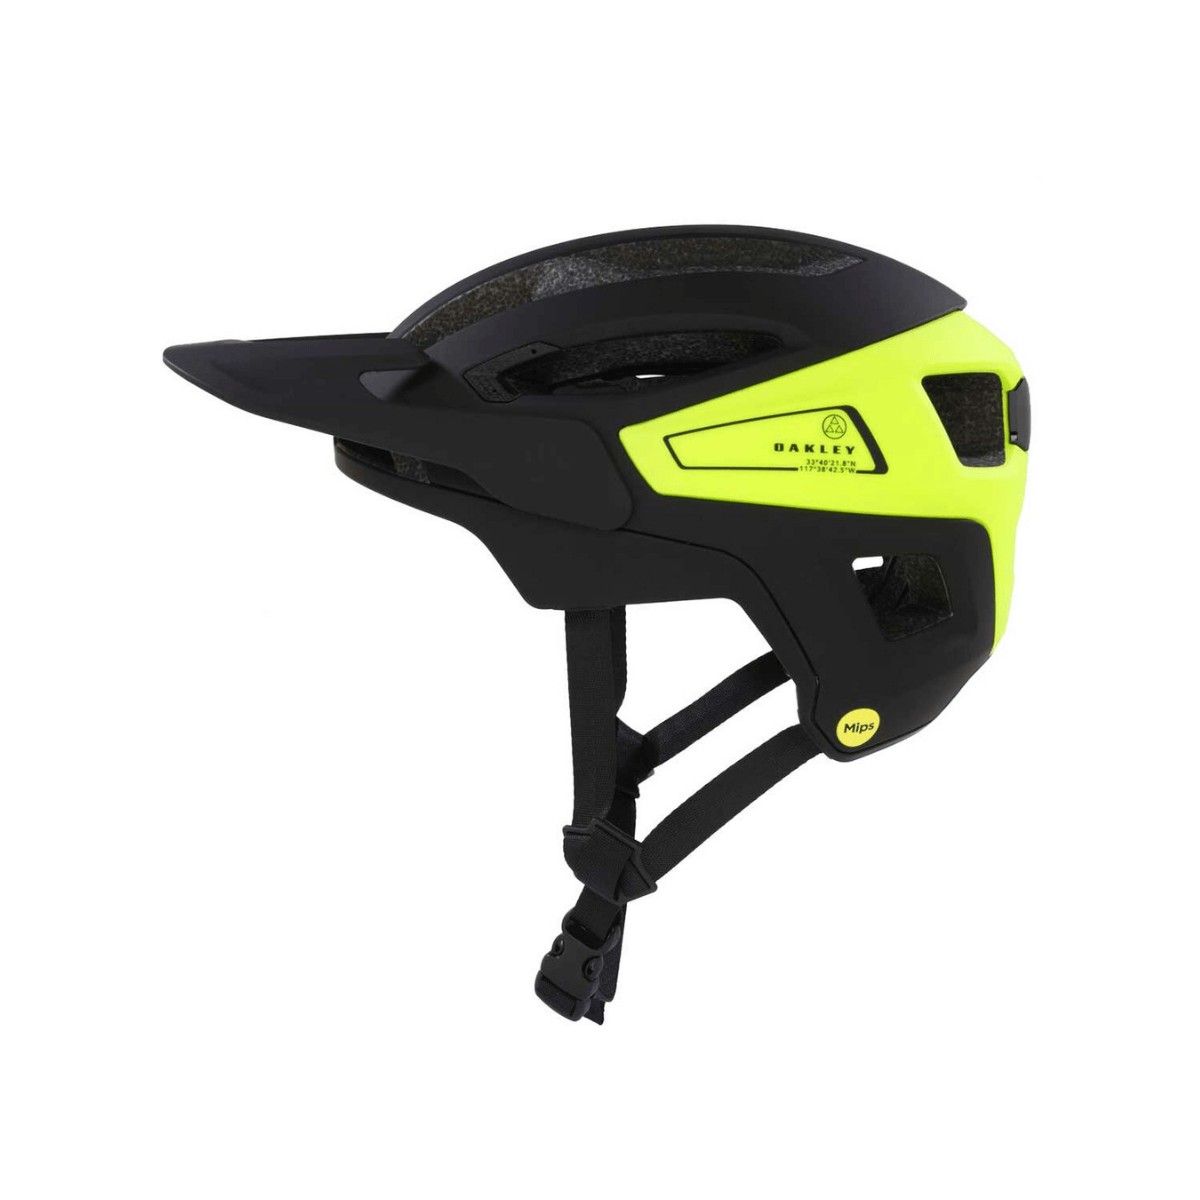 Oakley DRT3 Mips Helmet Black Yellow, Size S (52-56 cm)